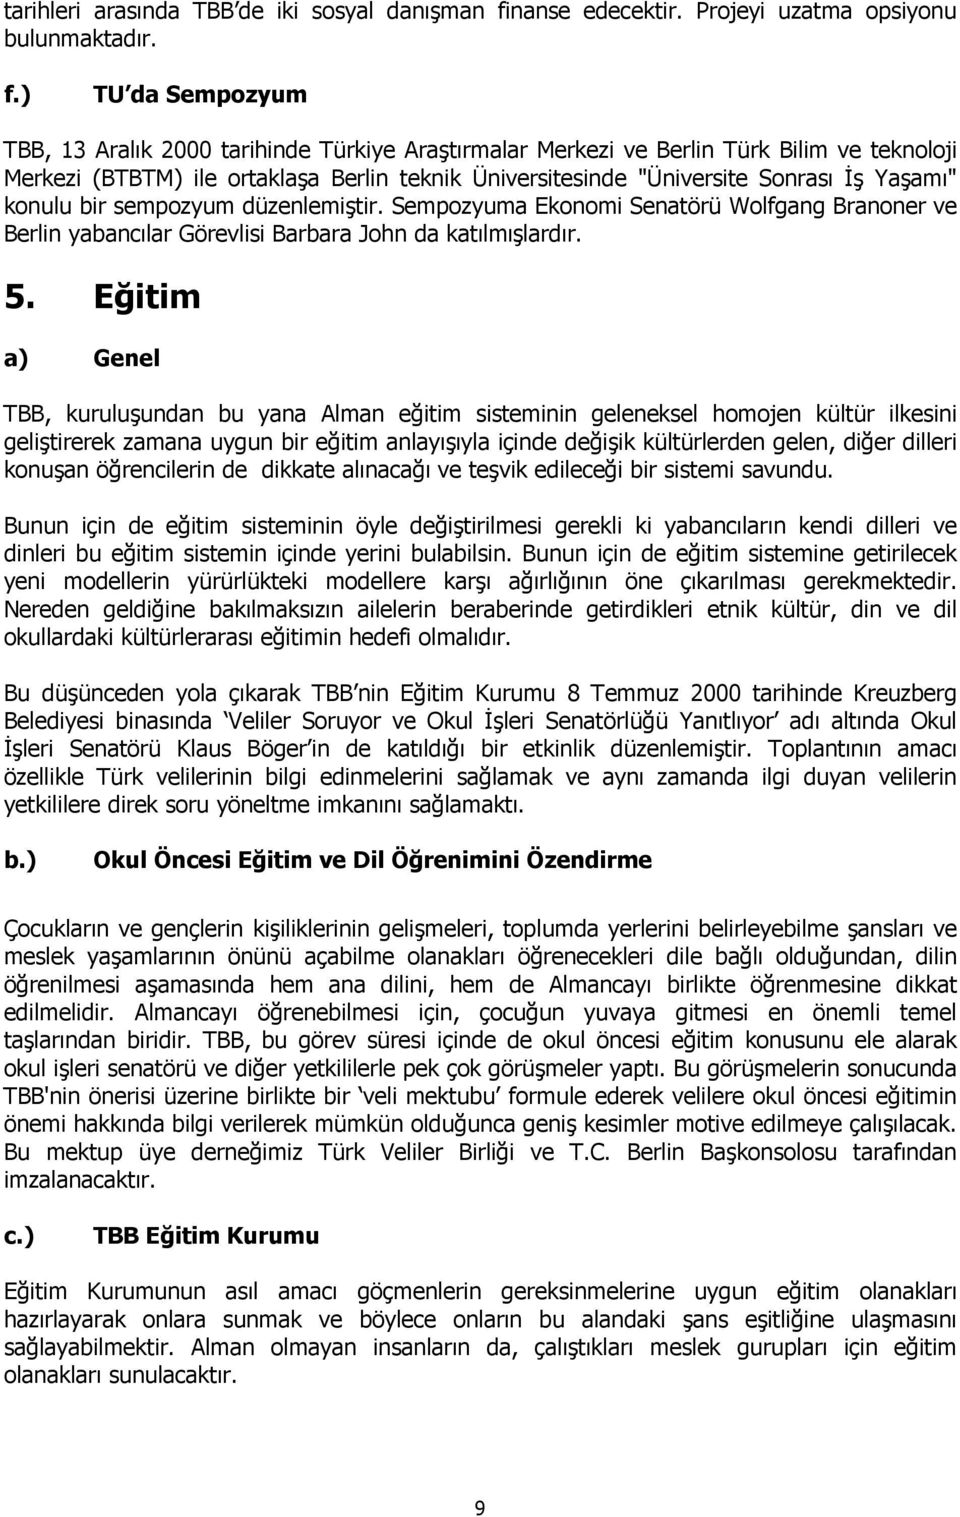 ) TU da Sempozyum TBB, 13 Aralık 2000 tarihinde Türkiye Araştırmalar Merkezi ve Berlin Türk Bilim ve teknoloji Merkezi (BTBTM) ile ortaklaşa Berlin teknik Üniversitesinde "Üniversite Sonrası Đş